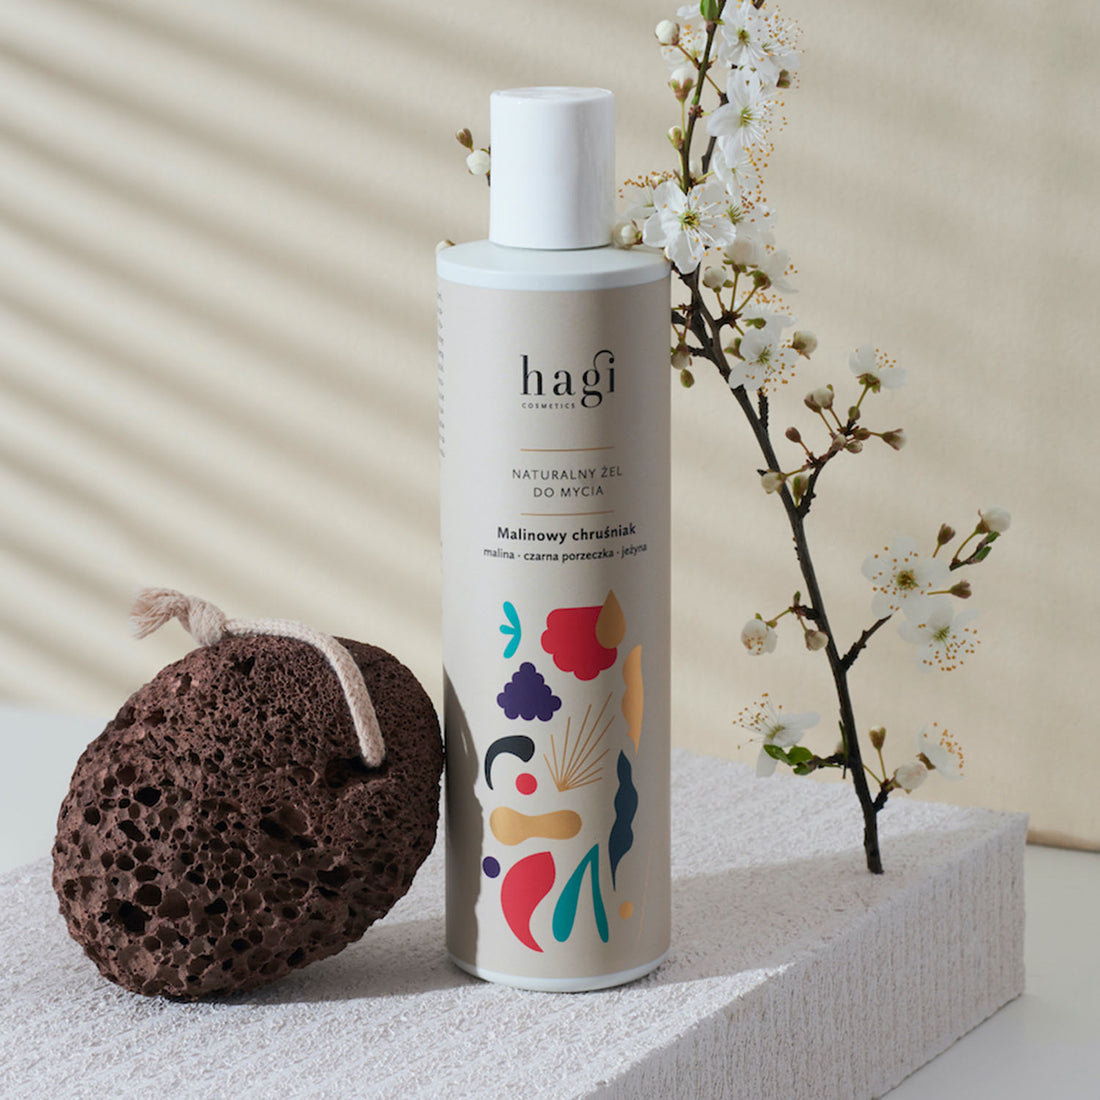 Hagi - Natural Body Wash [Berry Lovely]